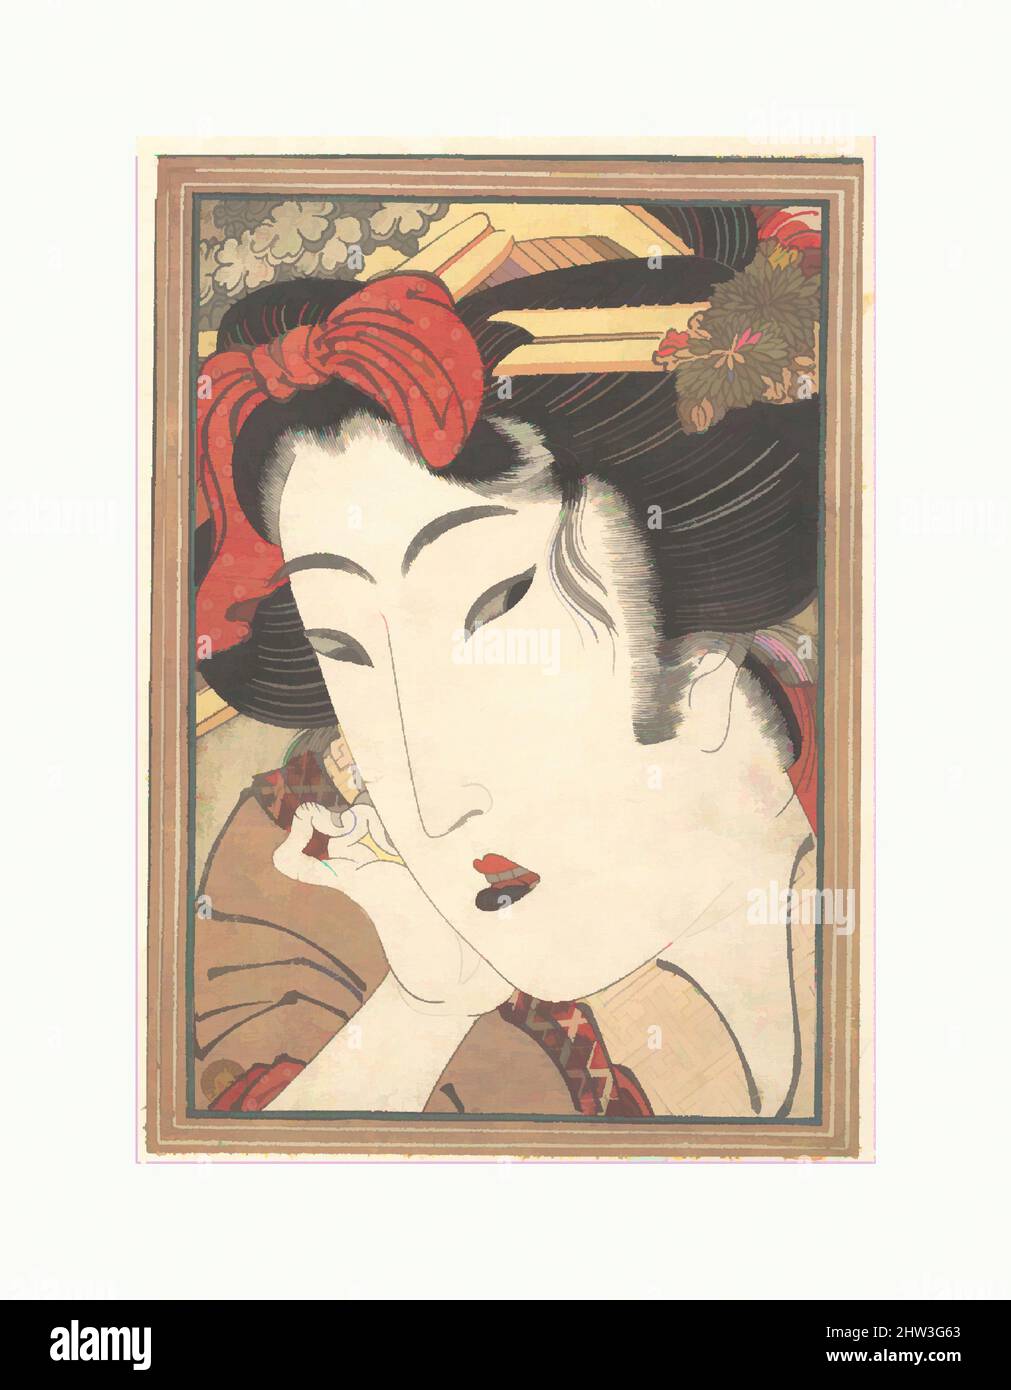 Art inspiré par Geisha rejeté de passions rafraîchies par Springtime Snow, époque Edo (1615–1868), 1824, Japon, imprimé en polychrome sur bois; Encre et couleur sur papier, H. 7in. (17,8 cm) ; avec 5 po (12,7 cm), Prints, Keisai Eisen (japonais, 1790–1848), l'un des artistes ukiyo-e les plus excentriques, œuvres classiques modernisées par Artotop avec une touche de modernité. Formes, couleur et valeur, impact visuel accrocheur sur l'art émotions par la liberté d'œuvres d'art d'une manière contemporaine. Un message intemporel qui cherche une nouvelle direction créative. Artistes qui se tournent vers le support numérique et créent le NFT Artotop Banque D'Images